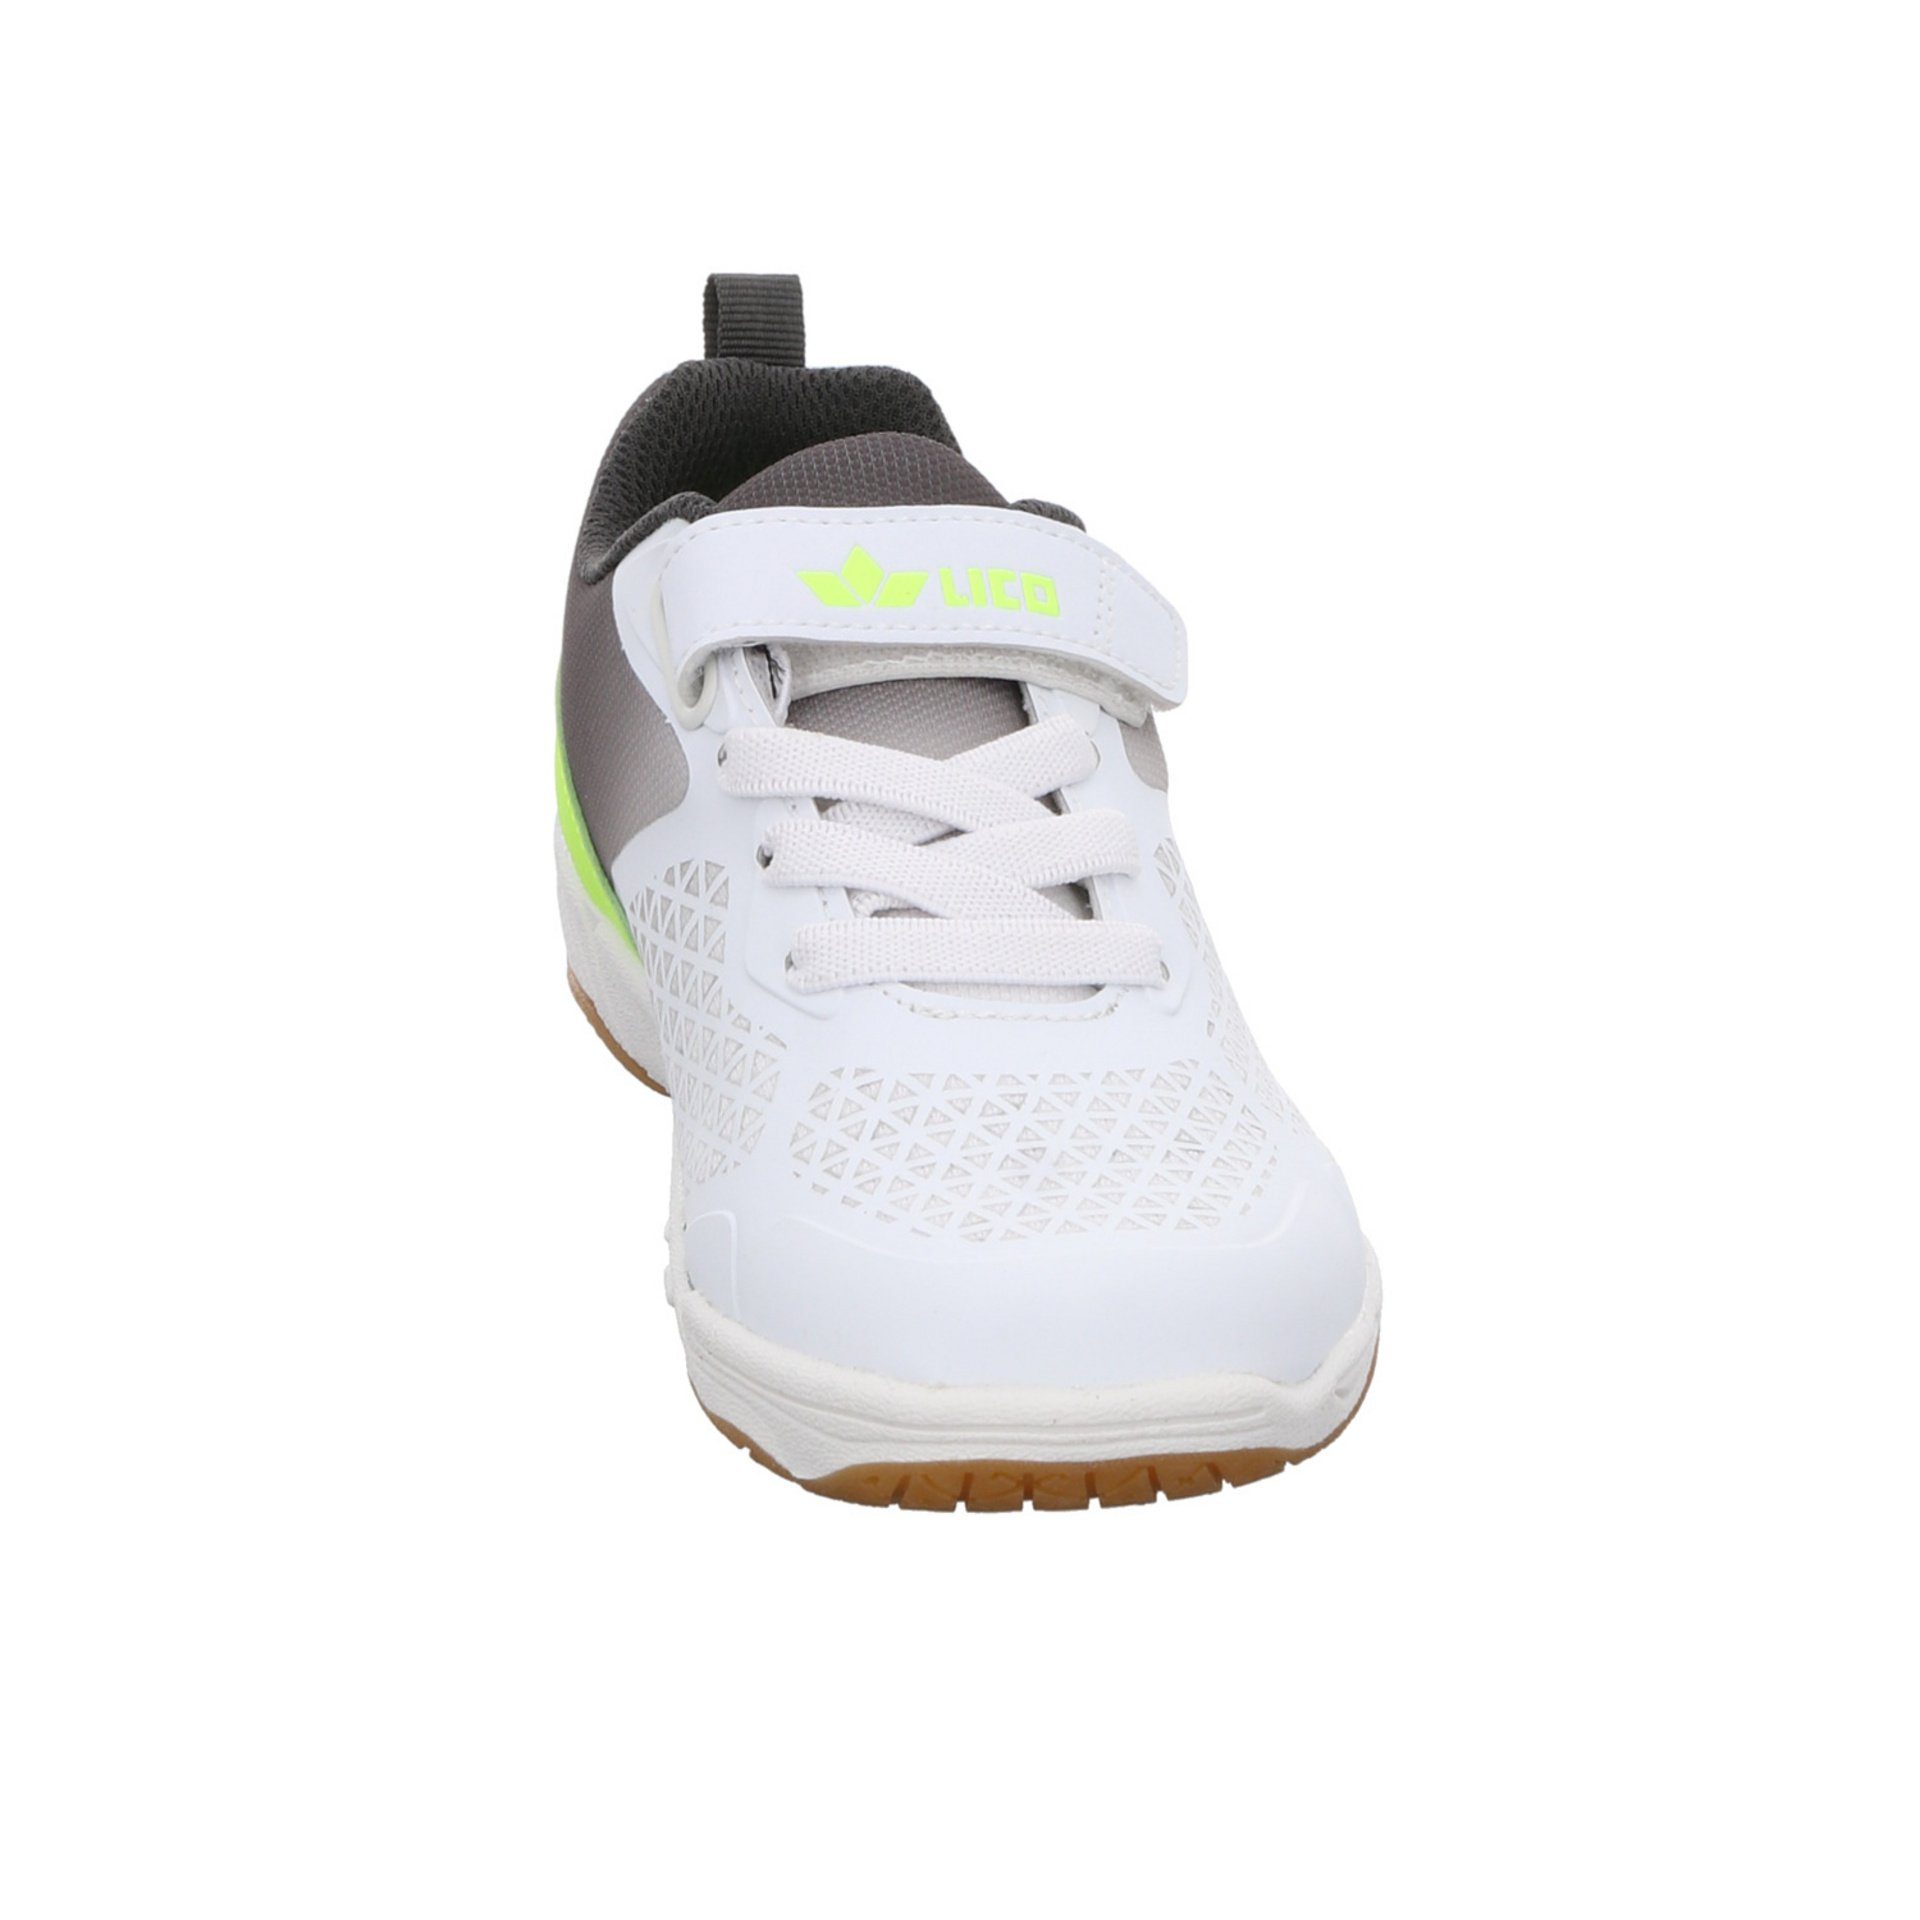 Lico Kit VS weiss/grau/lemon Synthetikkombination Sneaker Synthetikkombination Sneaker gemustert